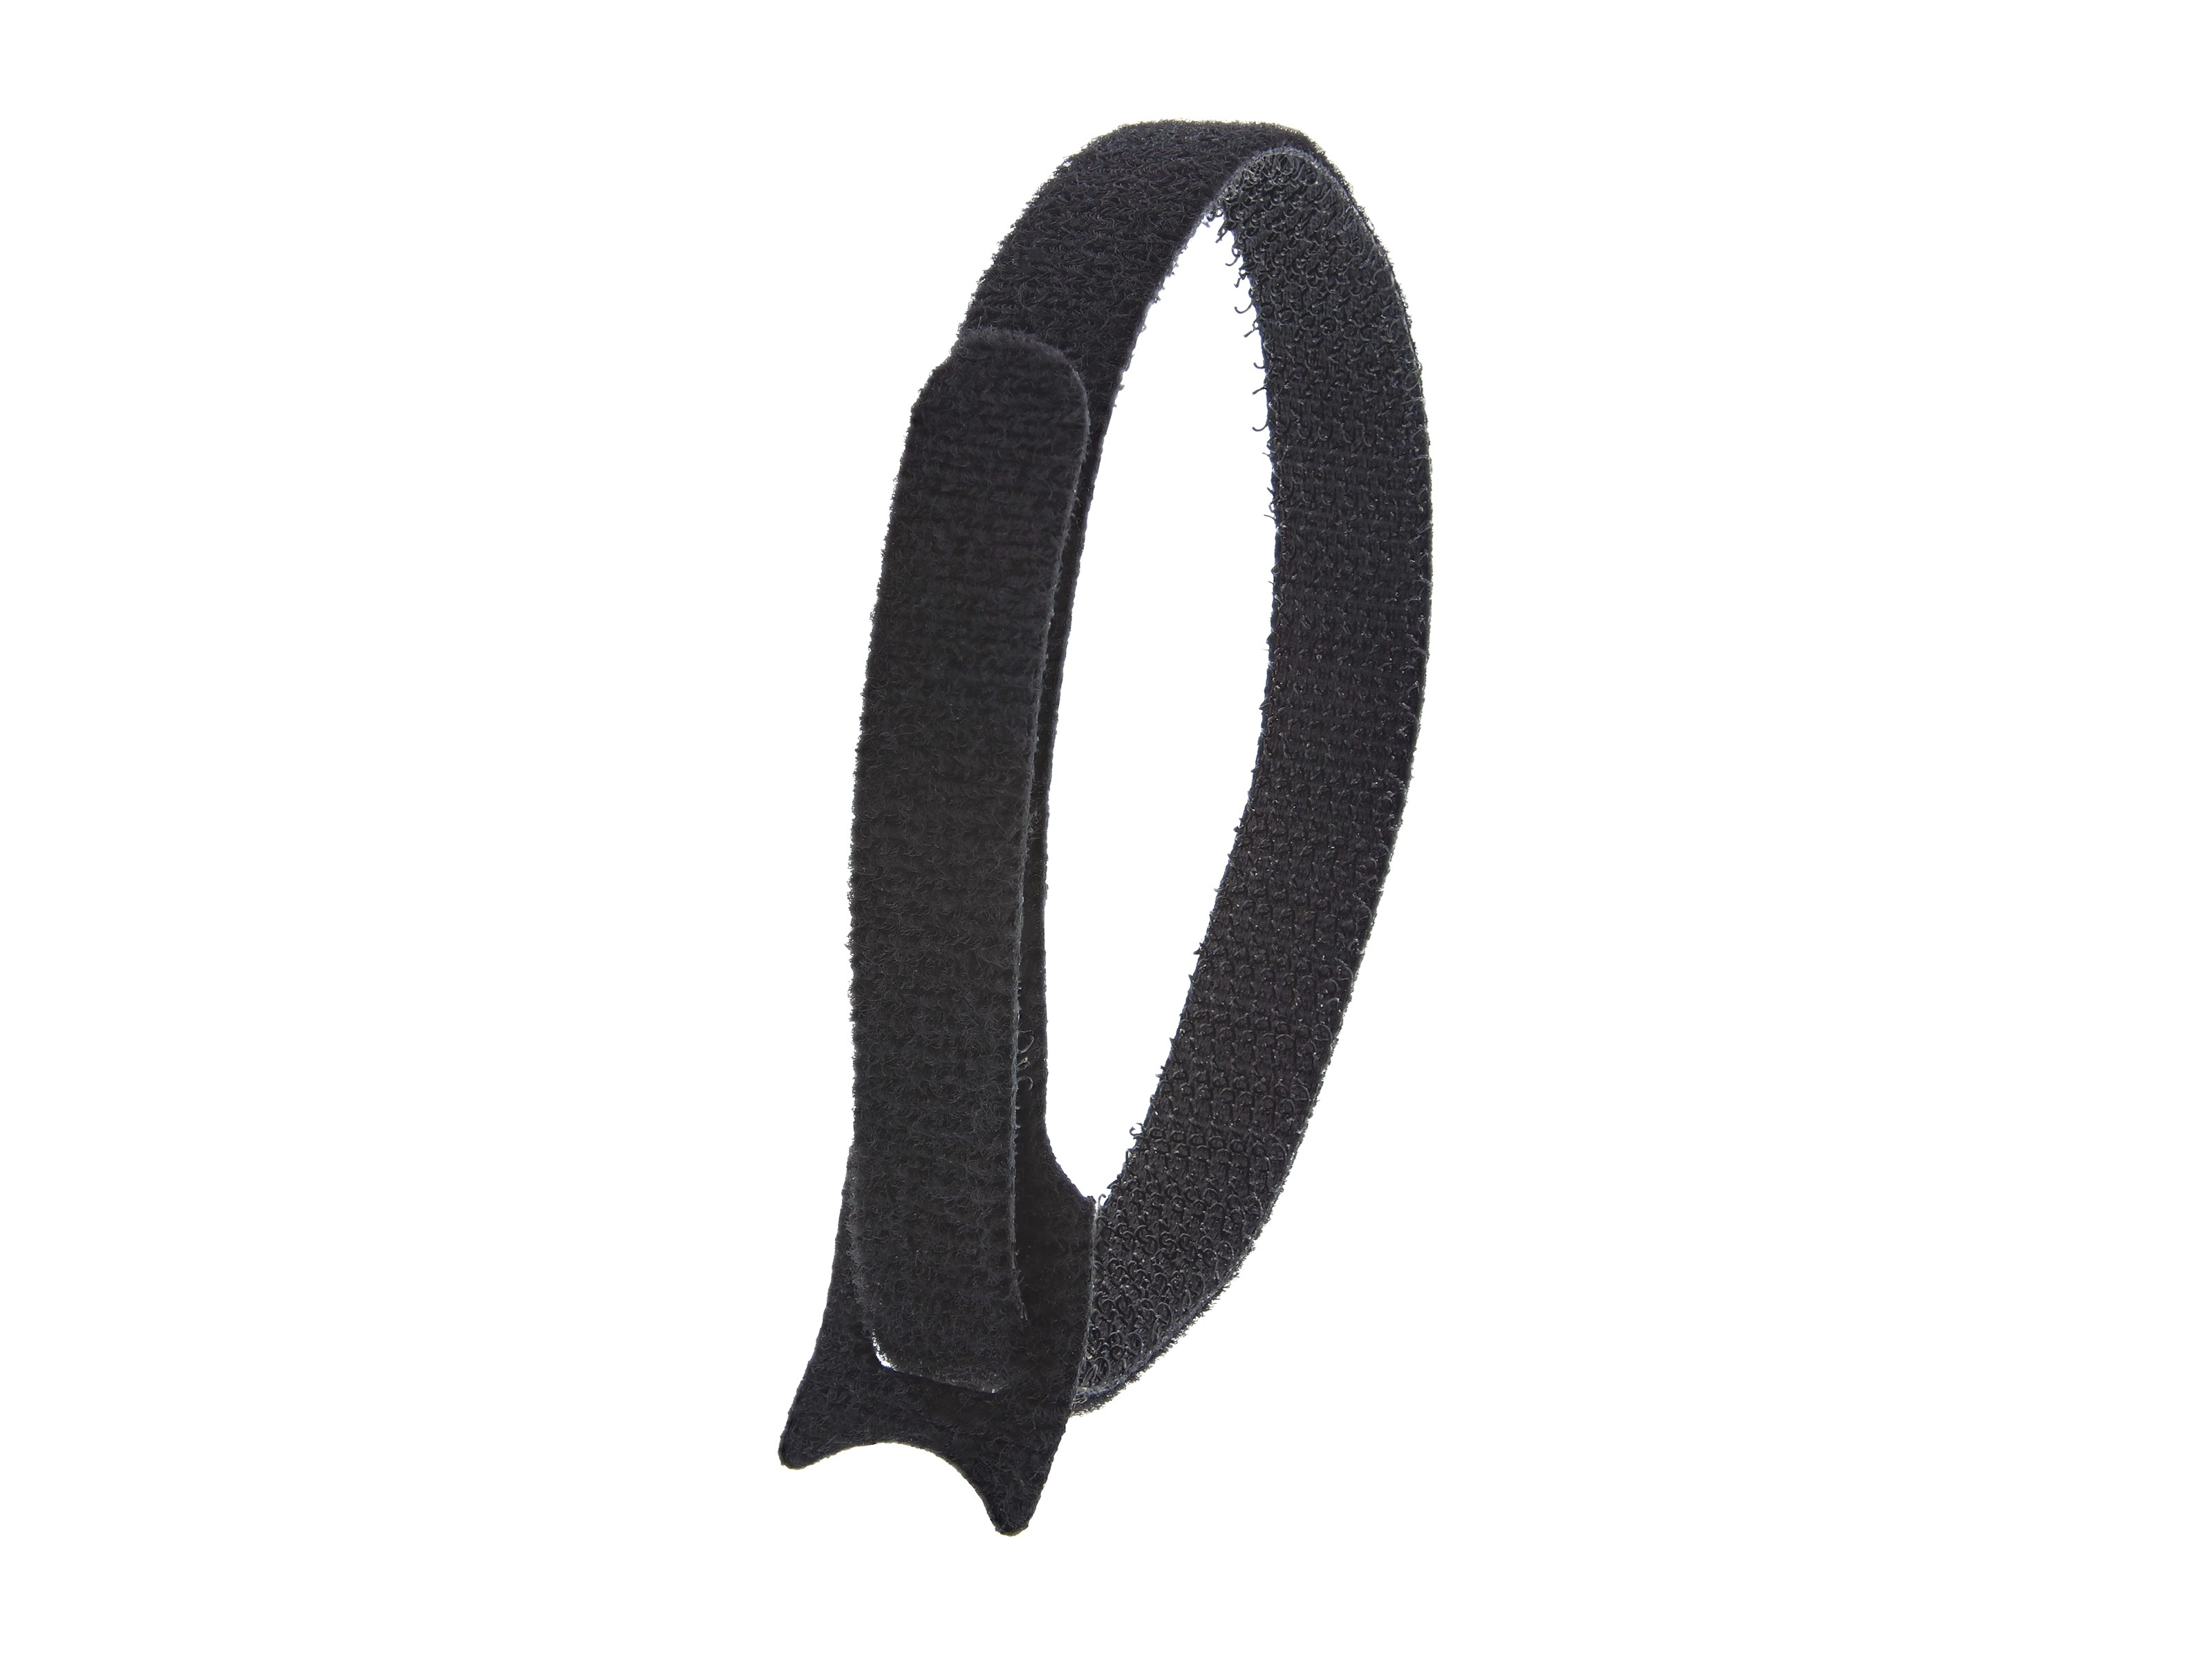 Secure Cable Ties 12 inch Black Hook and Loop Tie Wrap - 50 Pack